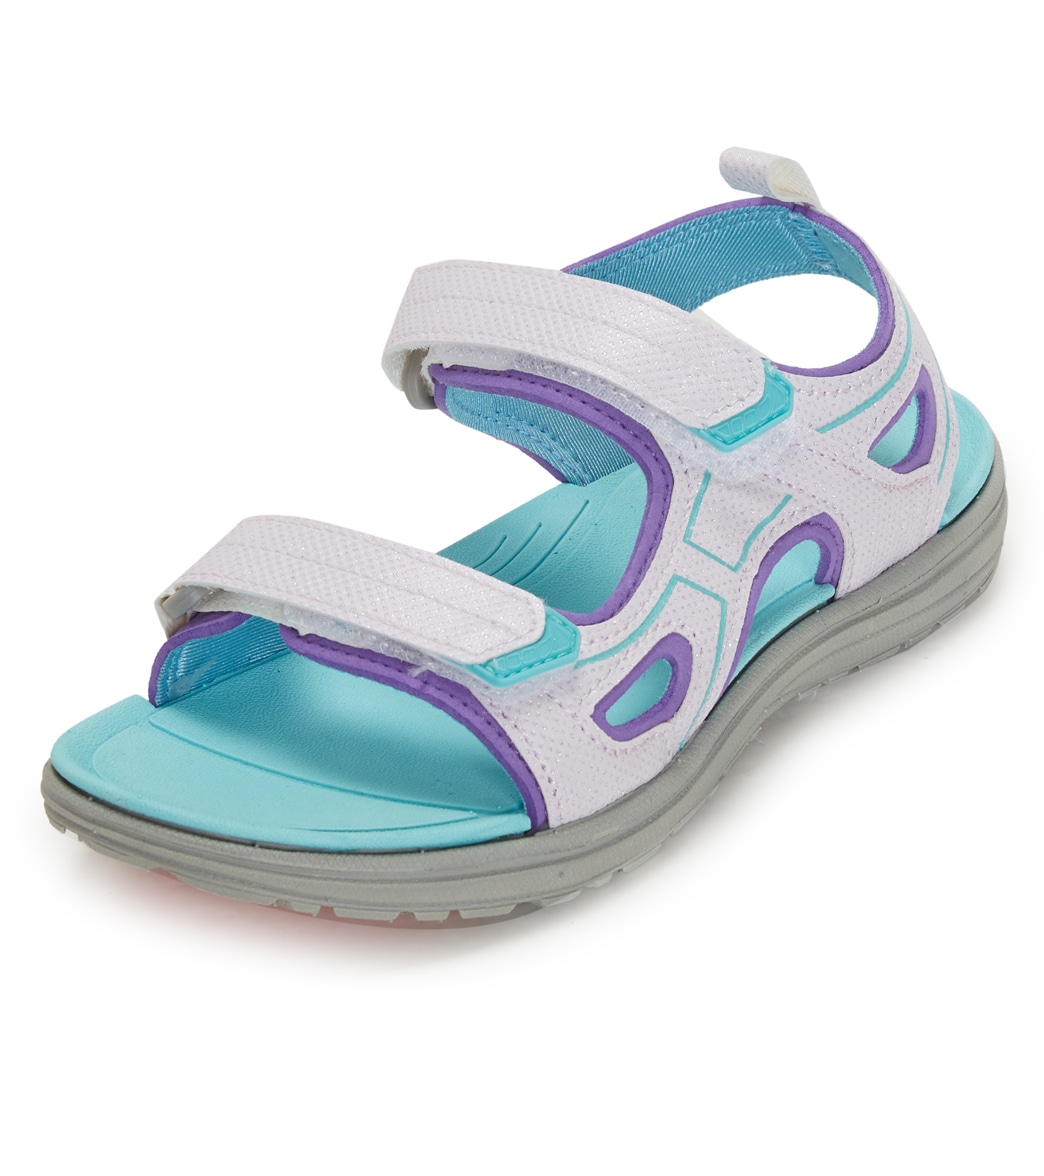 Northside Kid's Riverside Lite Sport Sandals Toddler/Little/Big Kid - Lilac/Aqua 10 - Swimoutlet.com